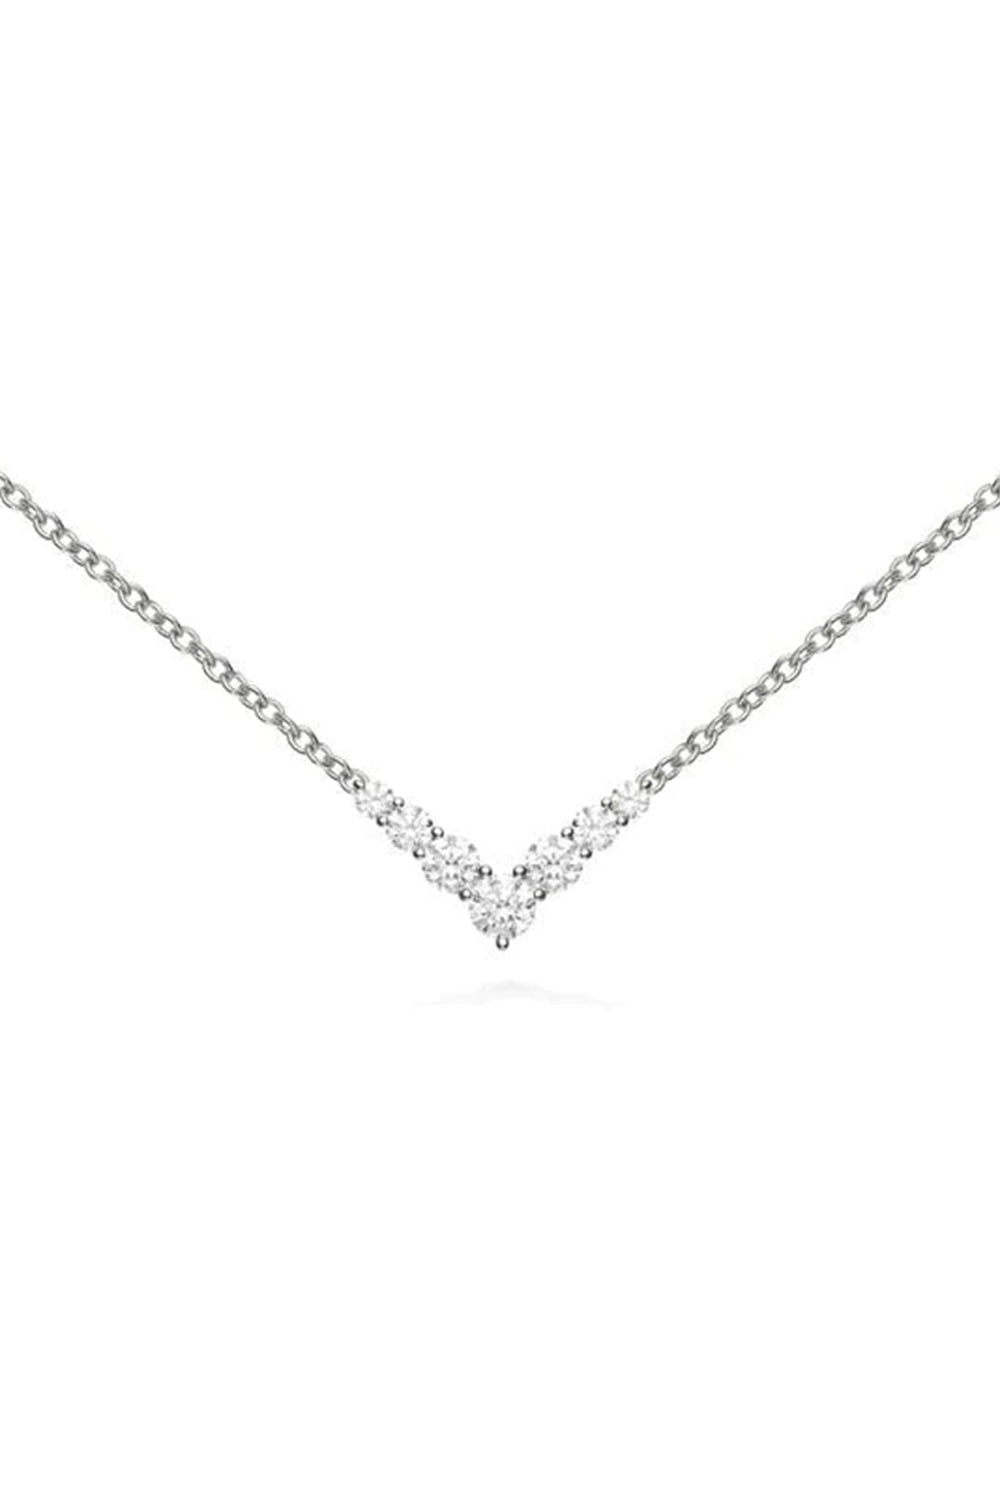 MELISSA KAYE-Mini Aria Diamond Necklace - White Gold-WHITE GOLD